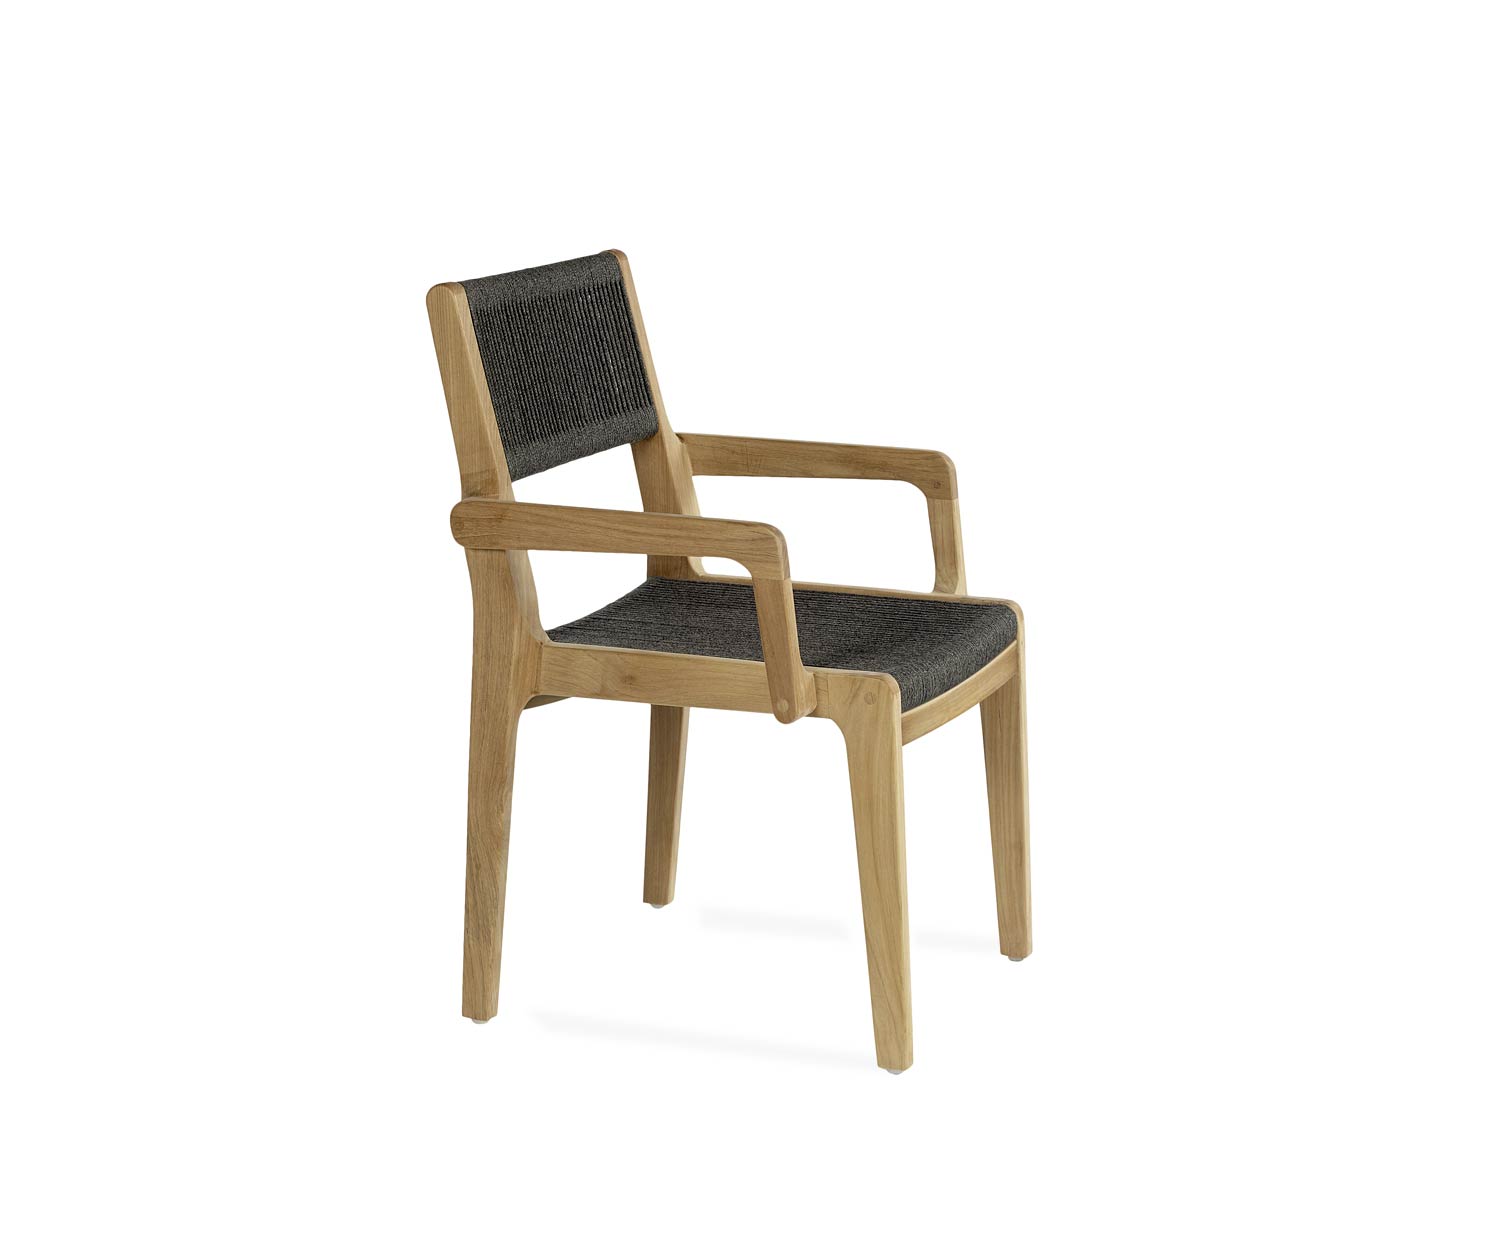 Exclusieve Oasiq Skagen design fauteuil